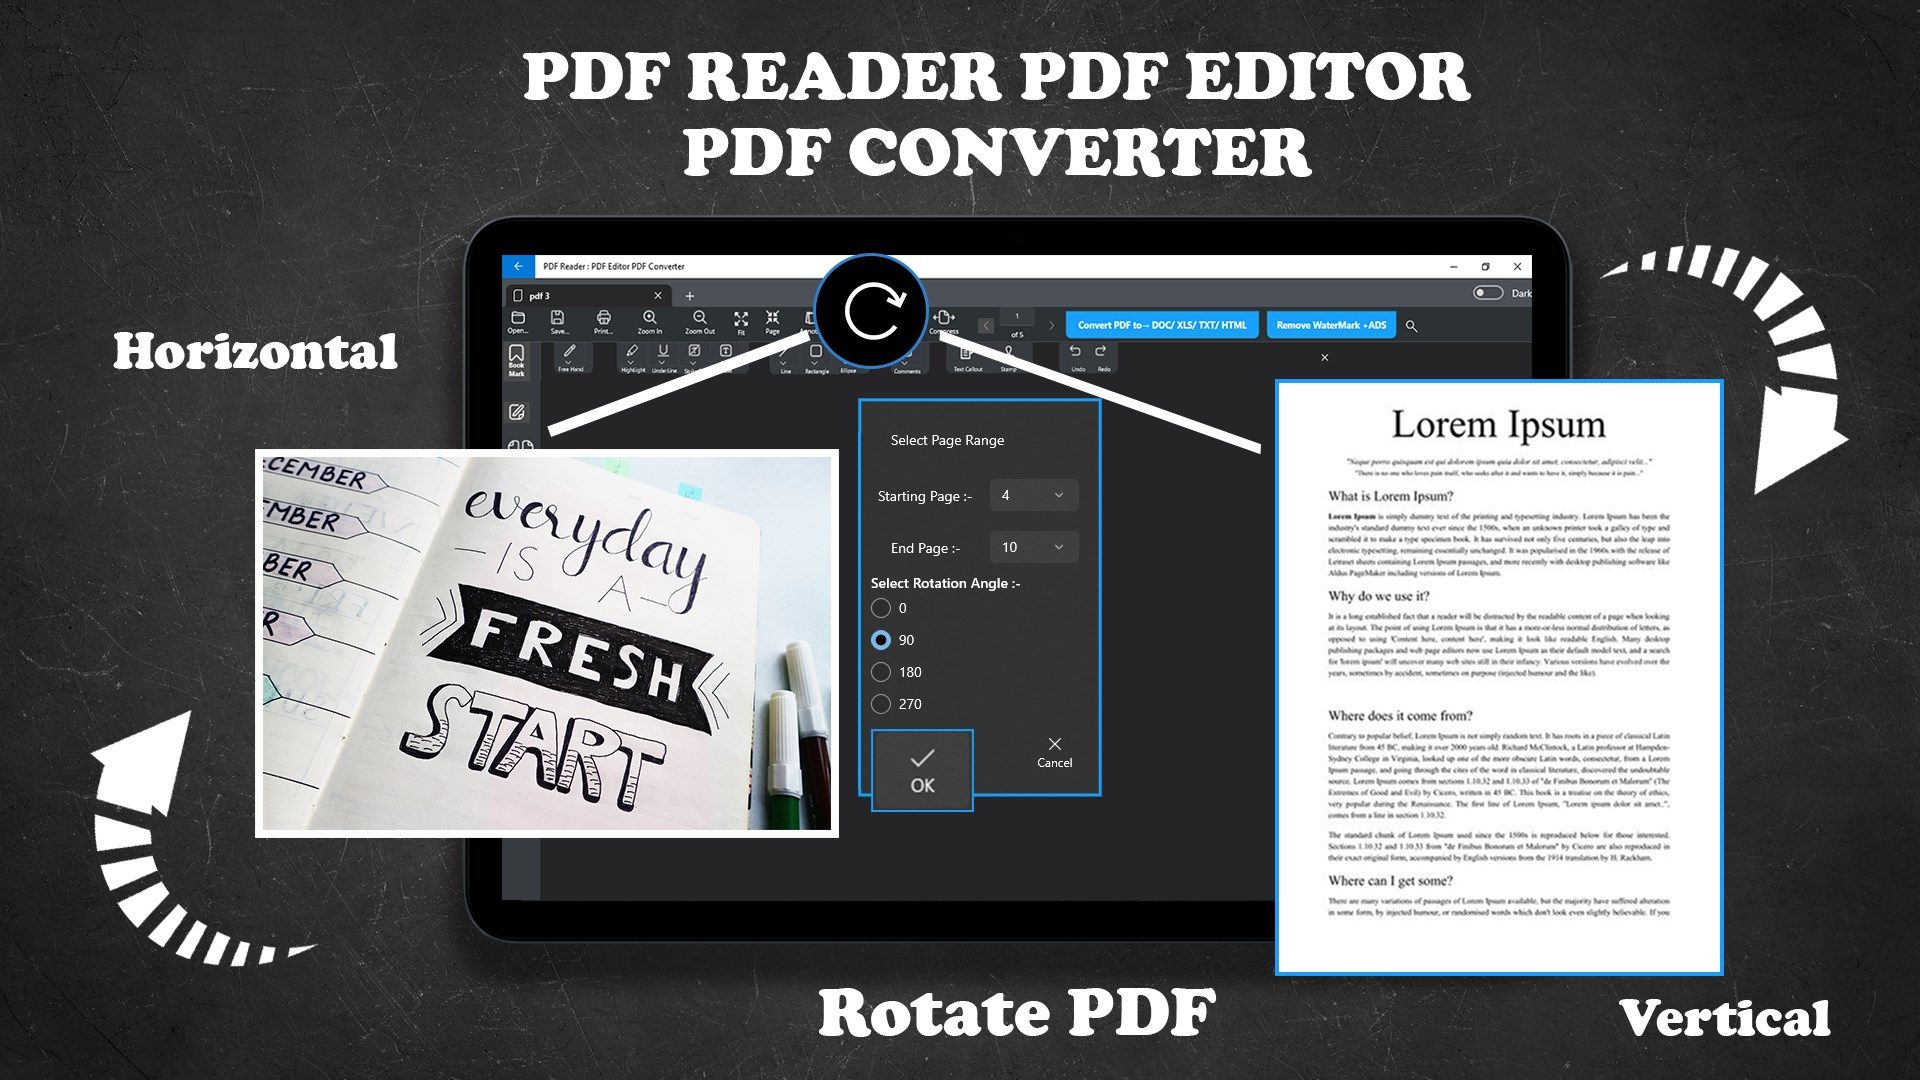 PDF Editor: PDF Reader